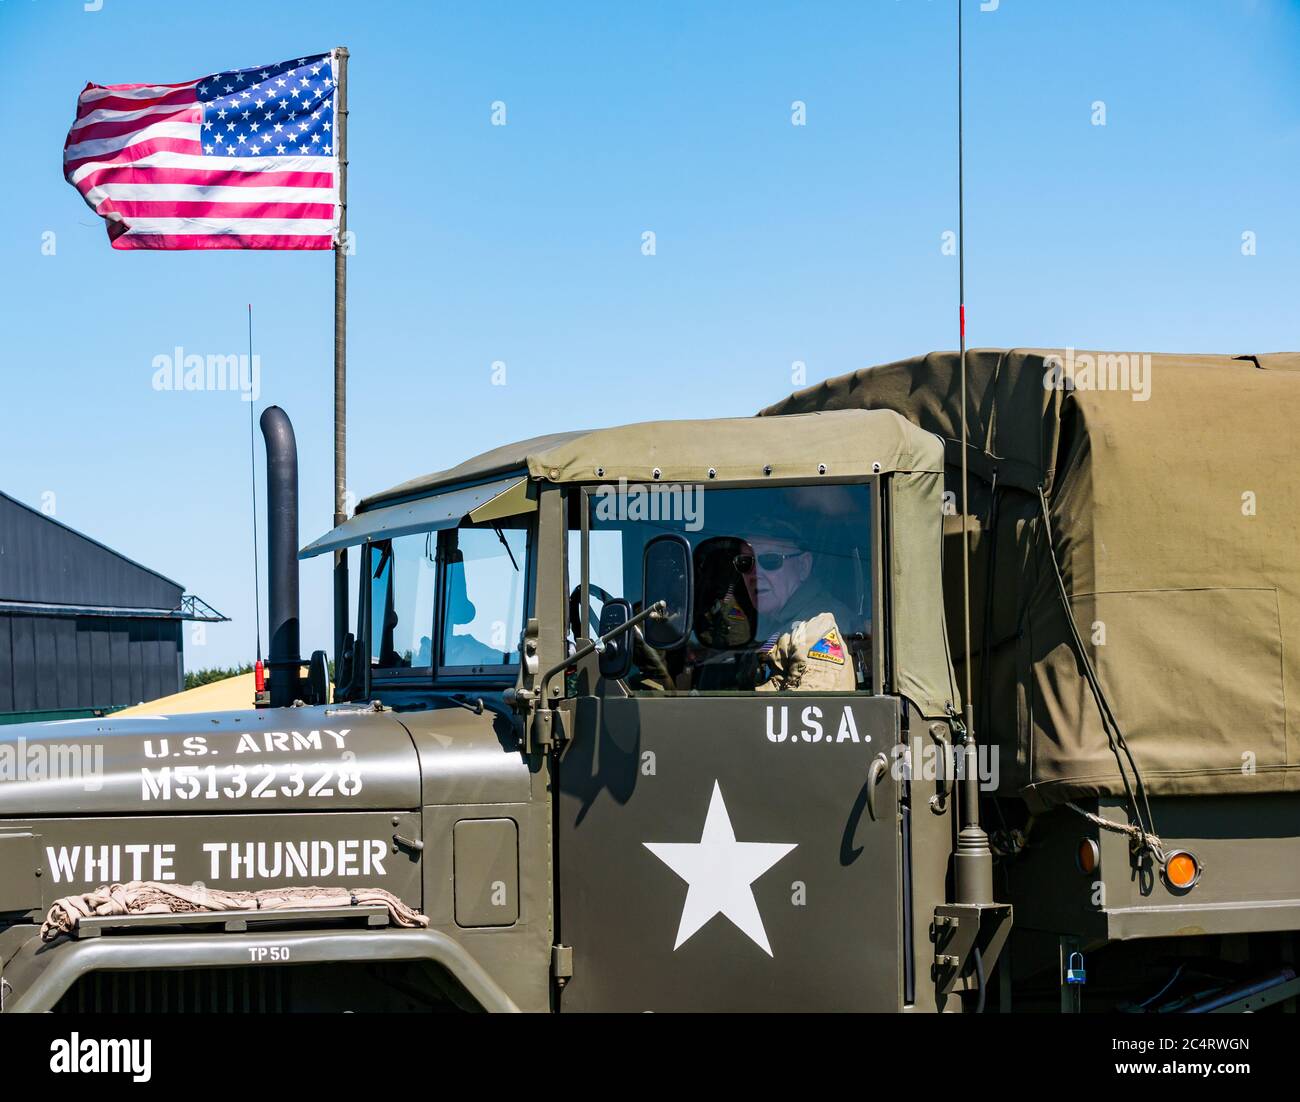 Uomo in uniforme militare in veicolo militare americano con bandiera a strisce e stelle americane, evento di esperienza in tempo di guerra, Fortuna orientale, Lothian orientale, Scozia, Regno Unito Foto Stock